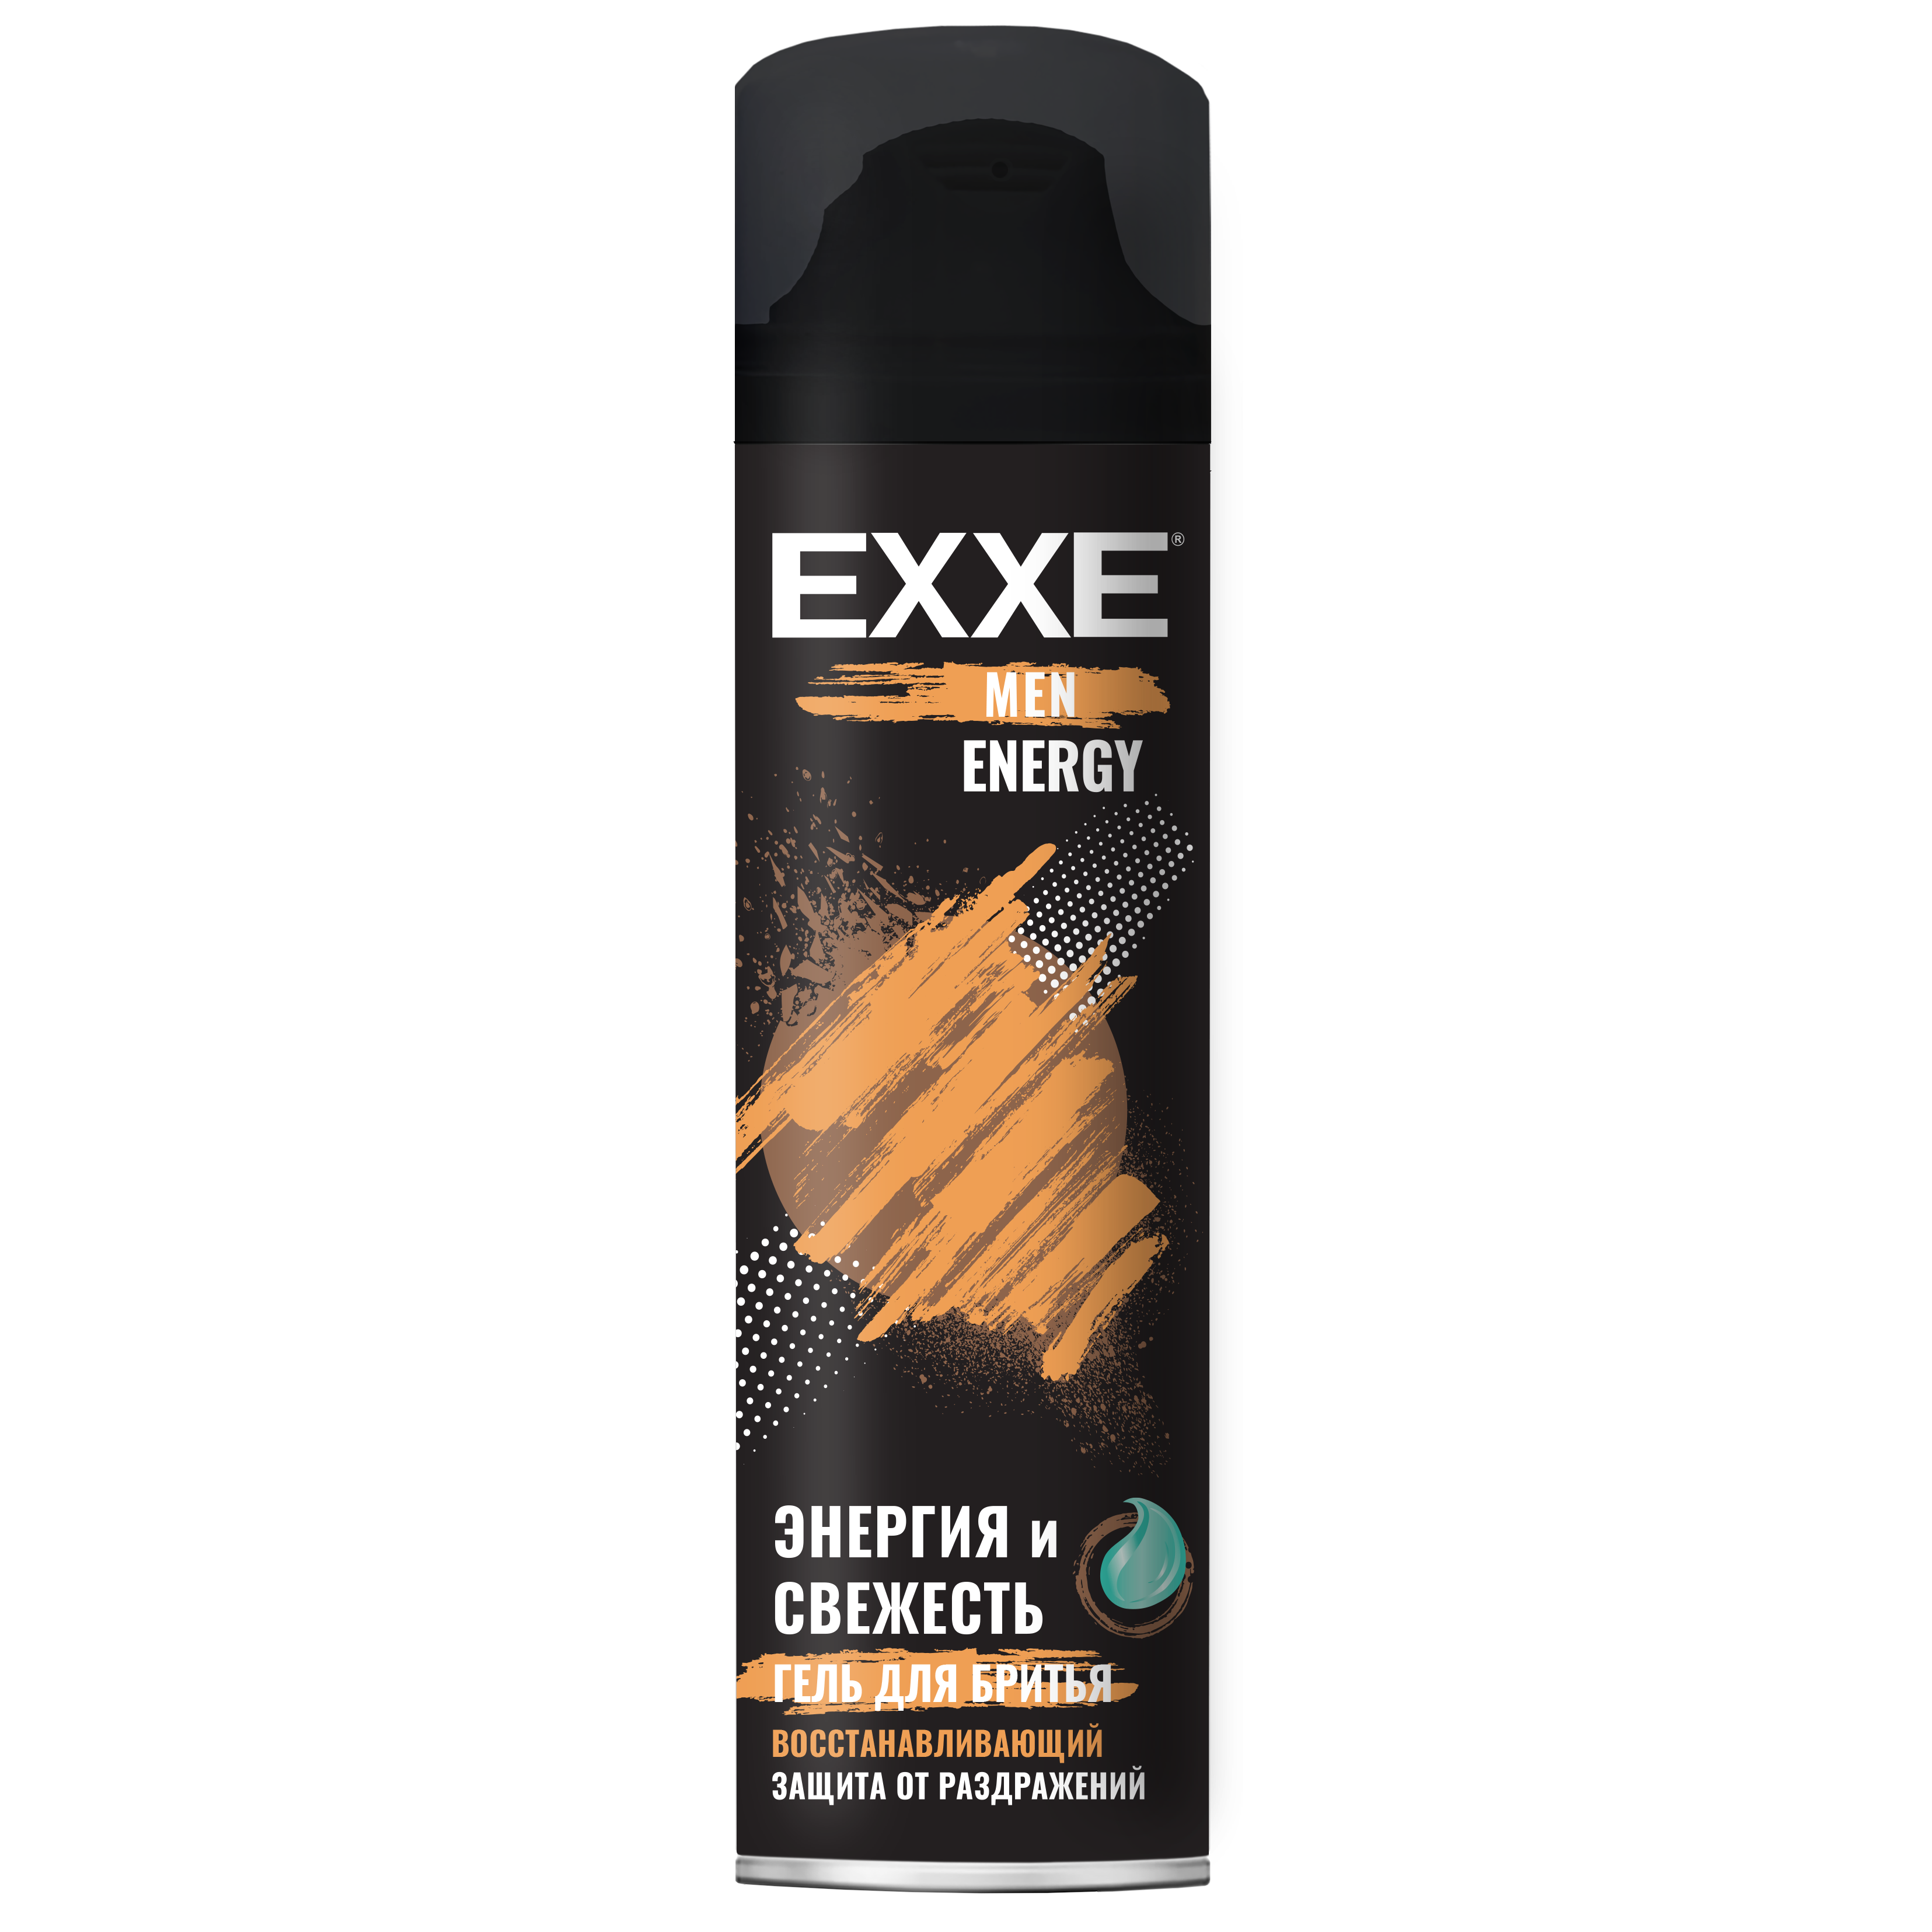 Гель для бритья EXXE MEN Восстанавливающий Energy, 200 мл гель для душа white cosmetics sport energy мужской парфюмированный 250 мл